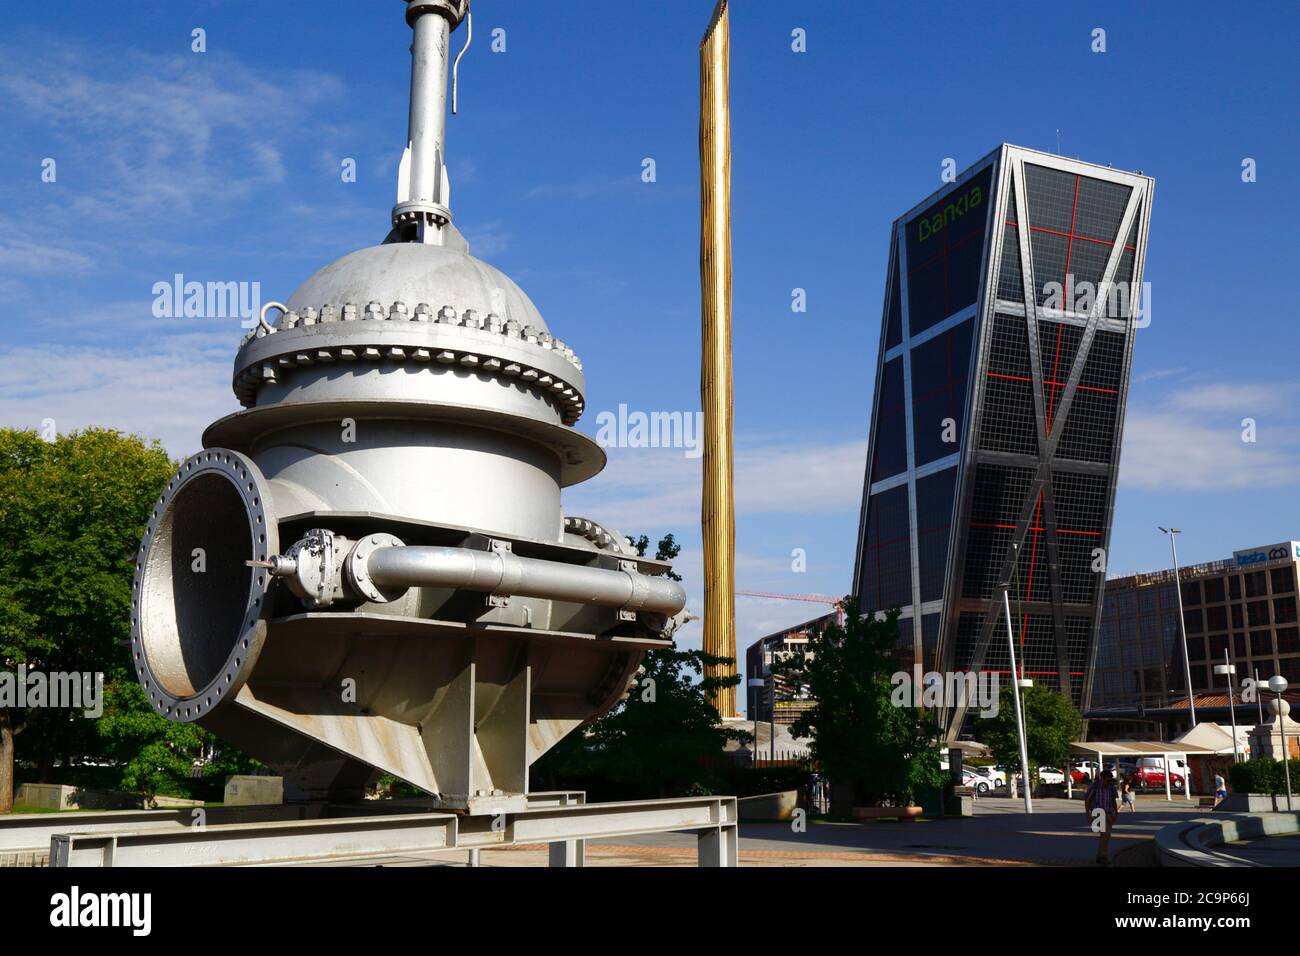 Machines d'anciens travaux d'eau, une des Tours de porte d'Europe / KIO sur RHS, Parque Cuarto Deposito, Madrid, Espagne Banque D'Images